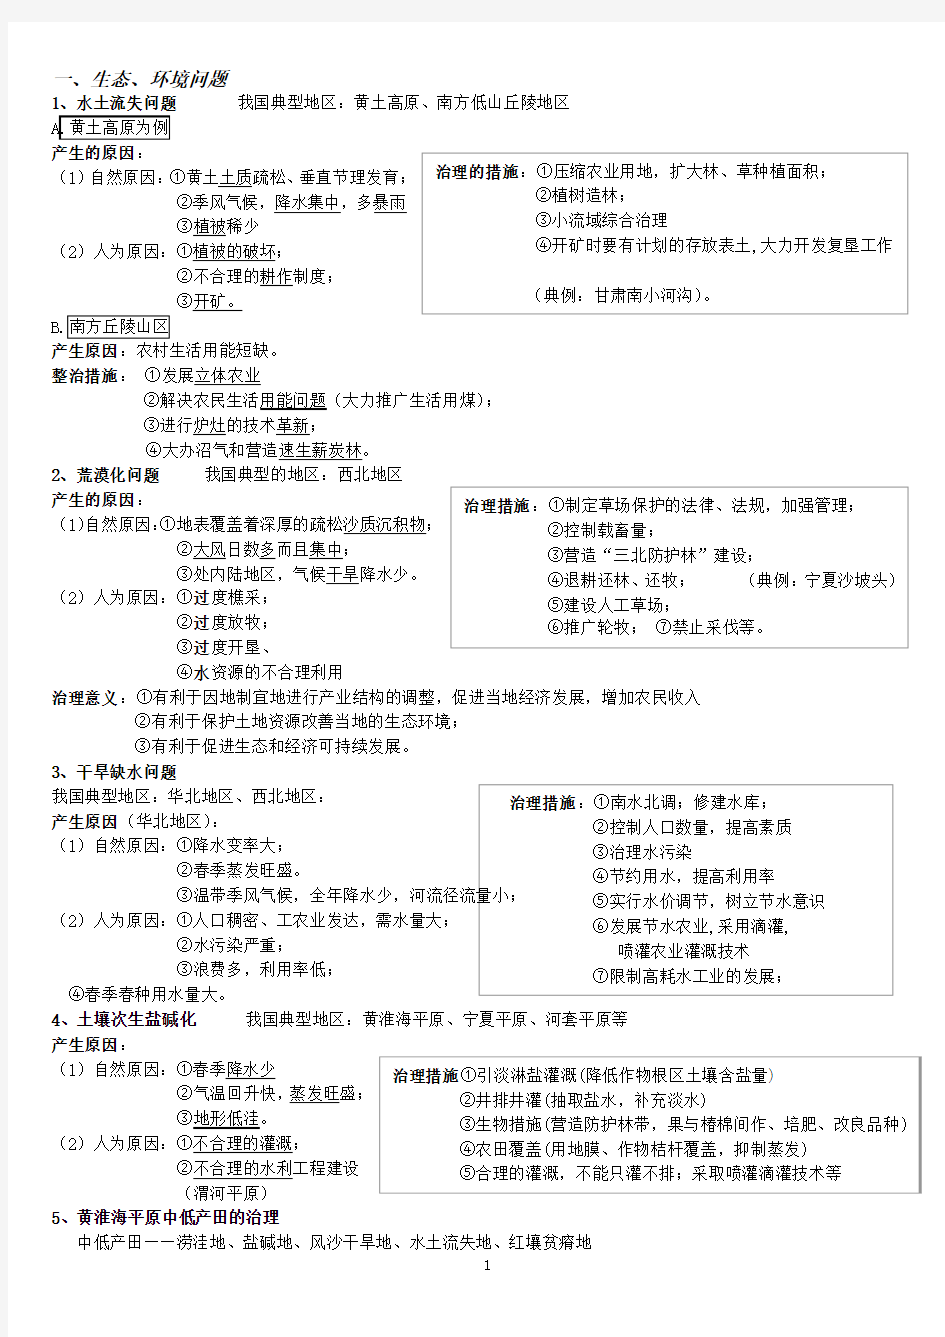 2011_2012辽宁高三高考地理大题答题模式方法(内部资料)